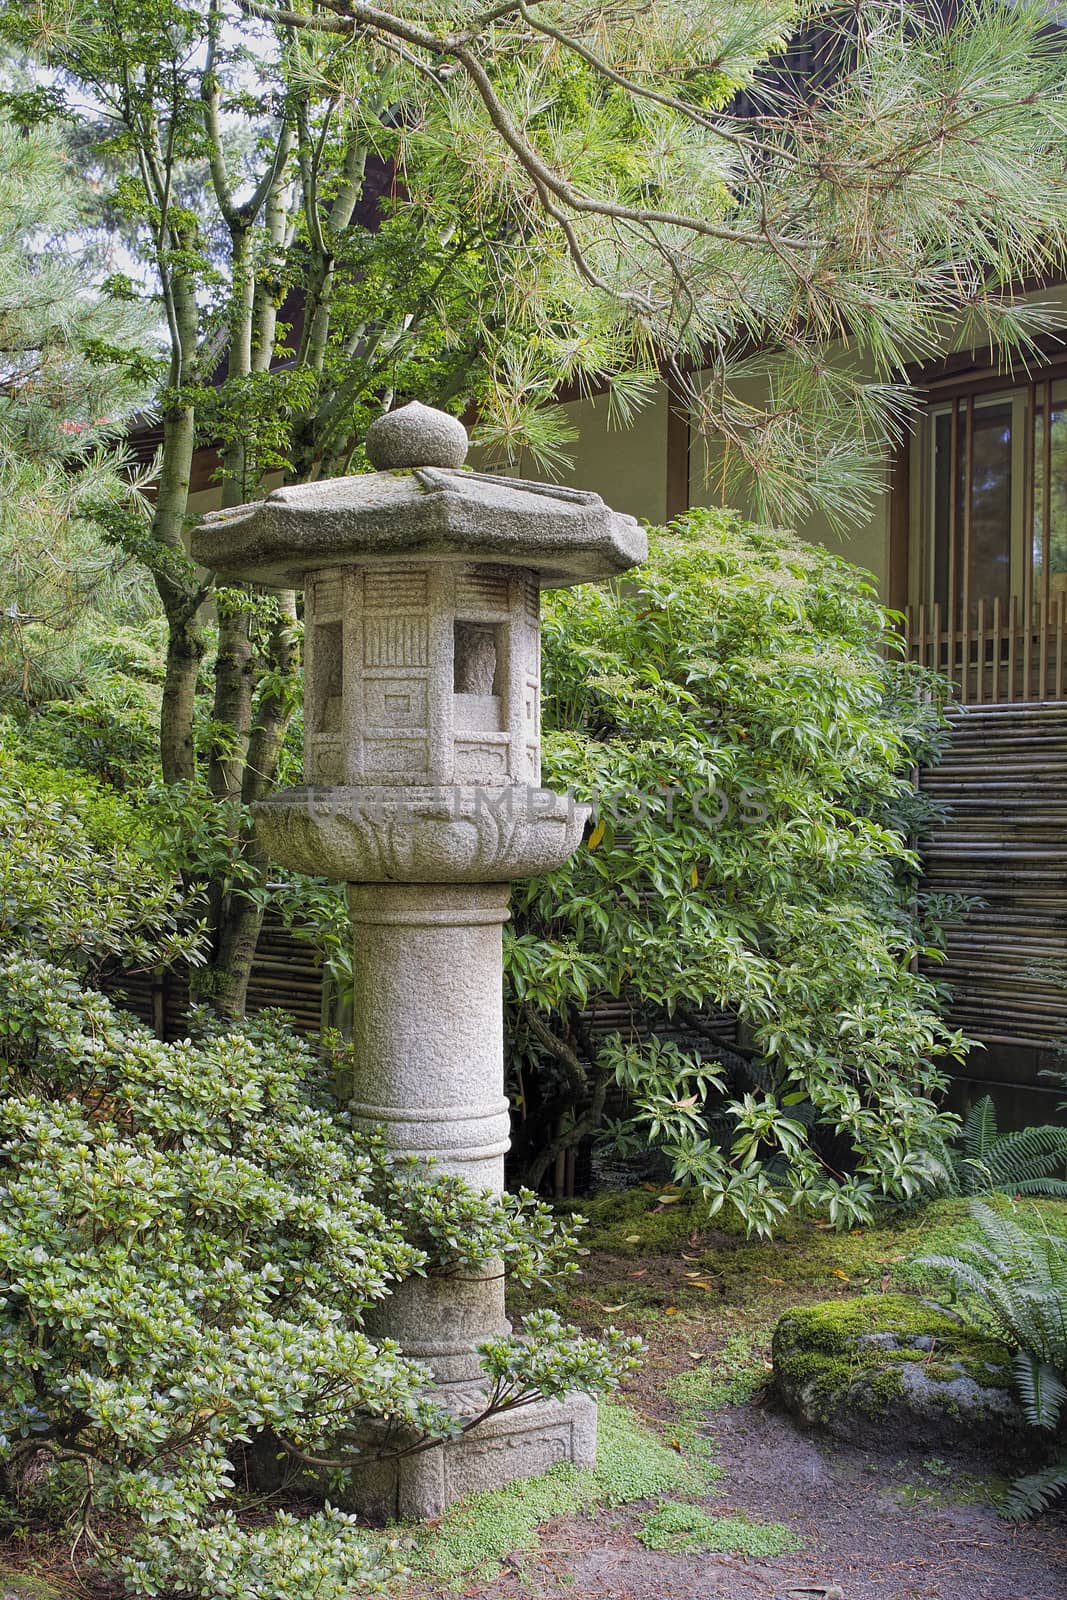 Japanese Stone Lantern in Garden Landscape by Davidgn